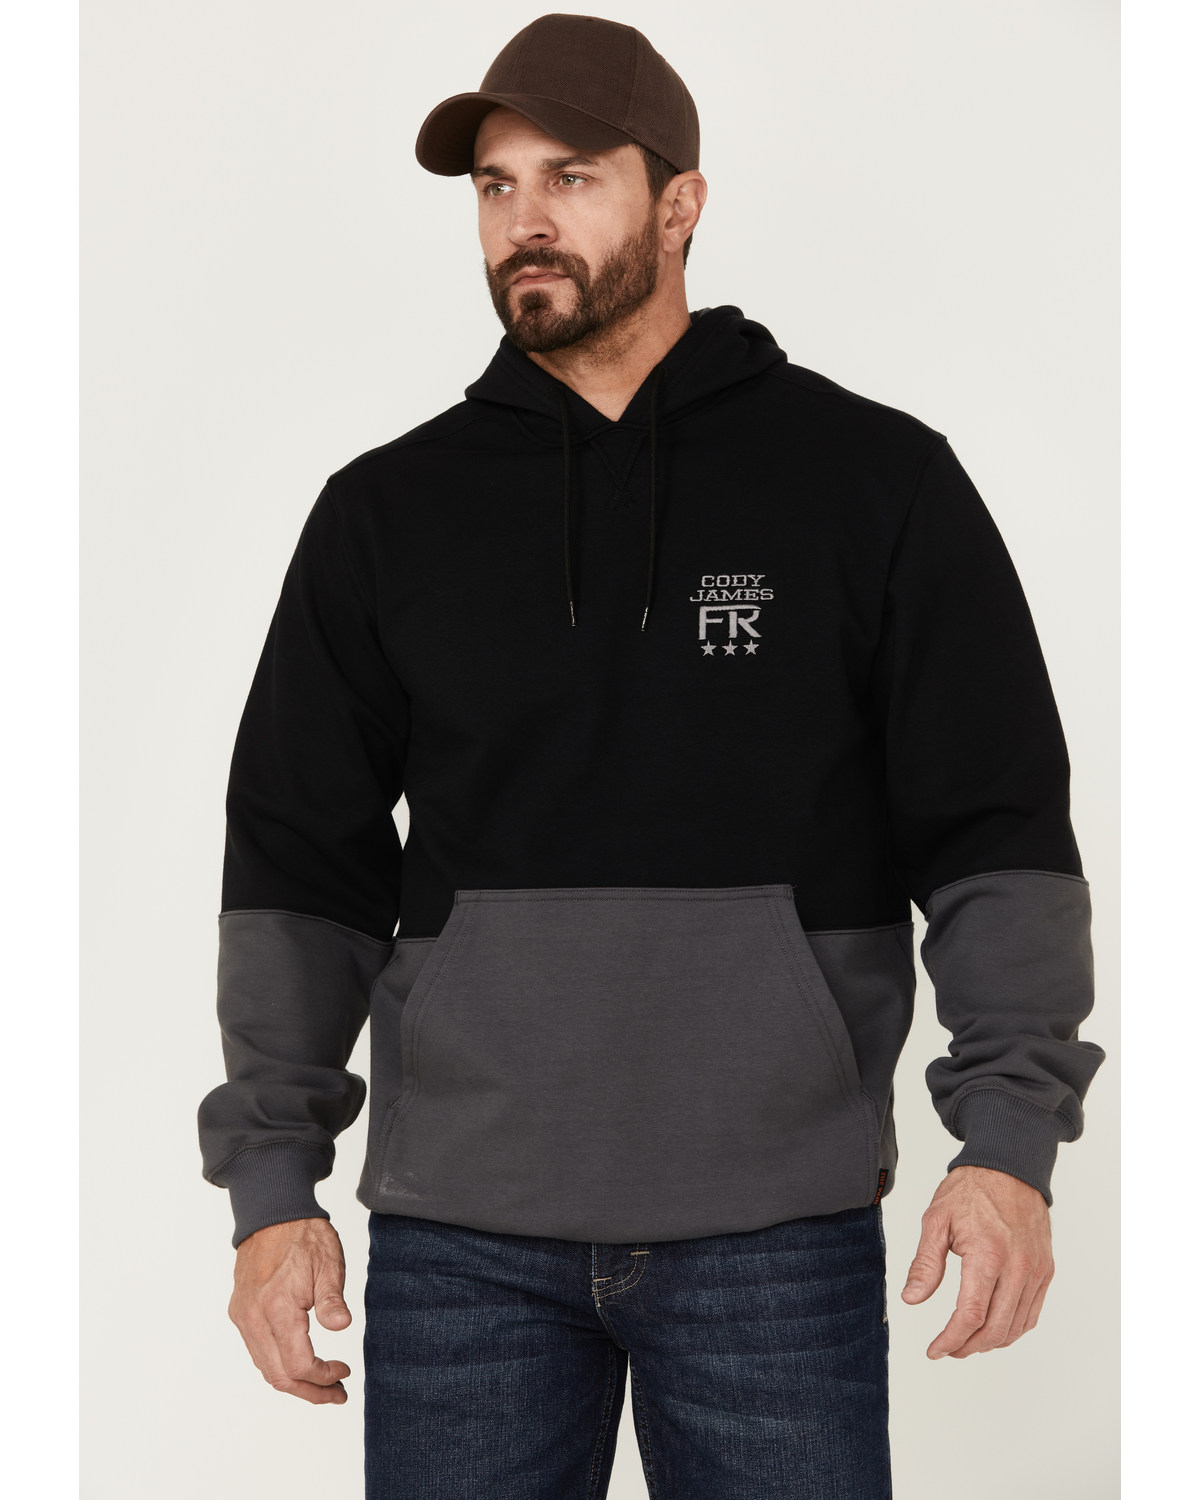 Cody James Men's FR Fleece Solid Hooded Work Sweatshirt